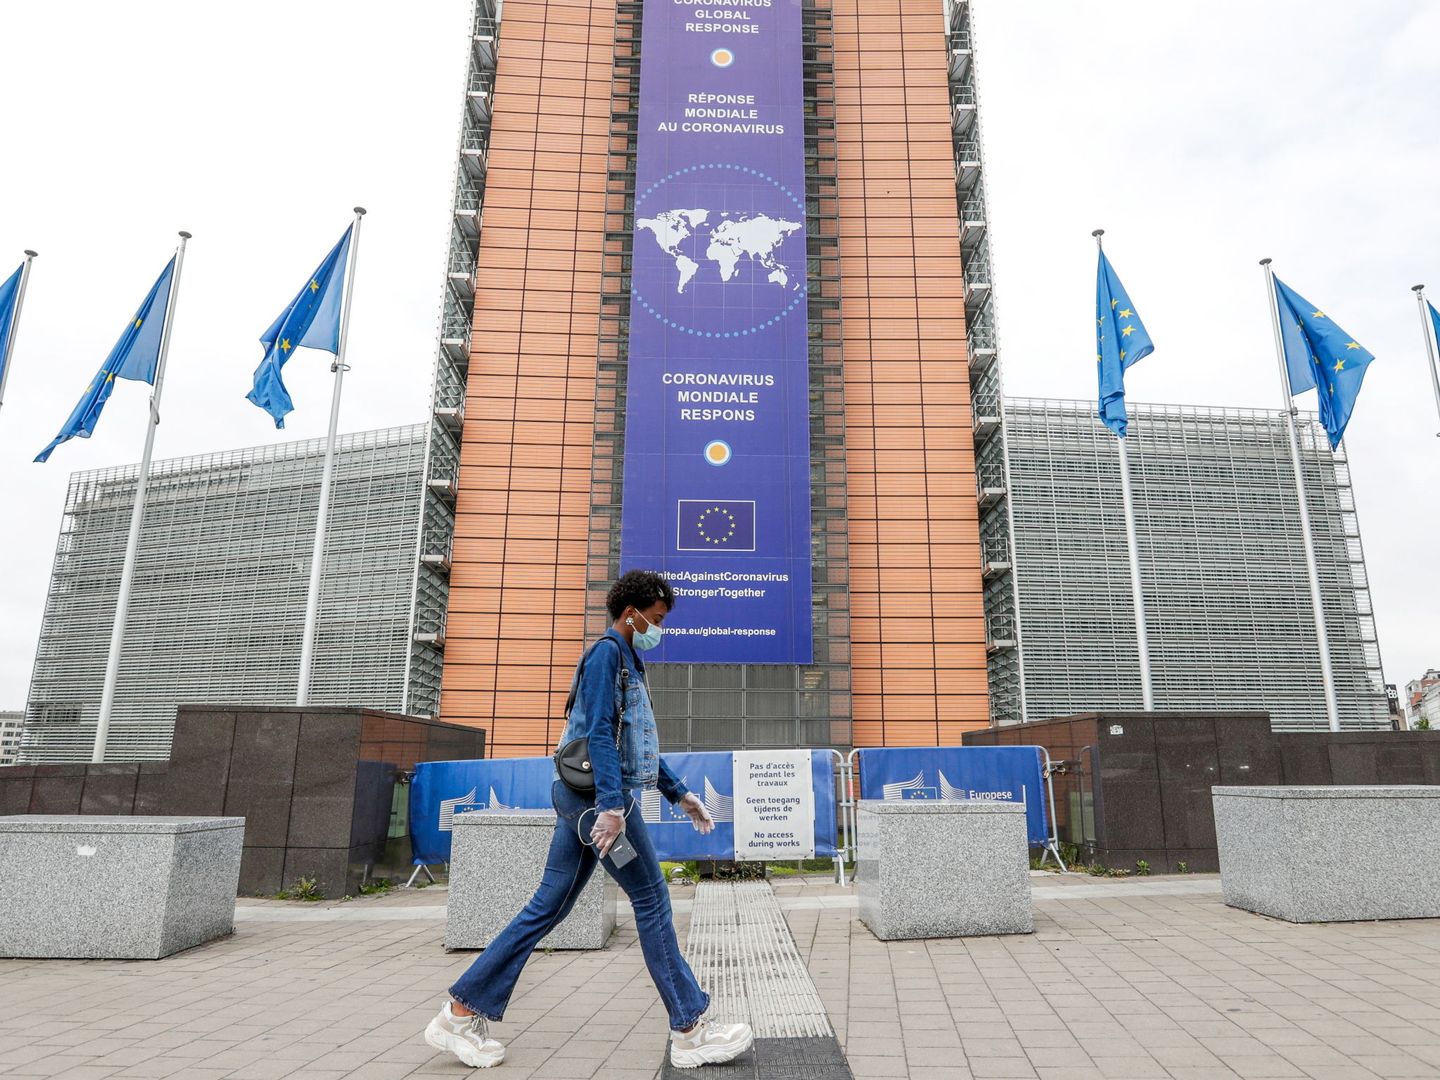 Sede de la Comisión Europea en Bruselas. (EFE)